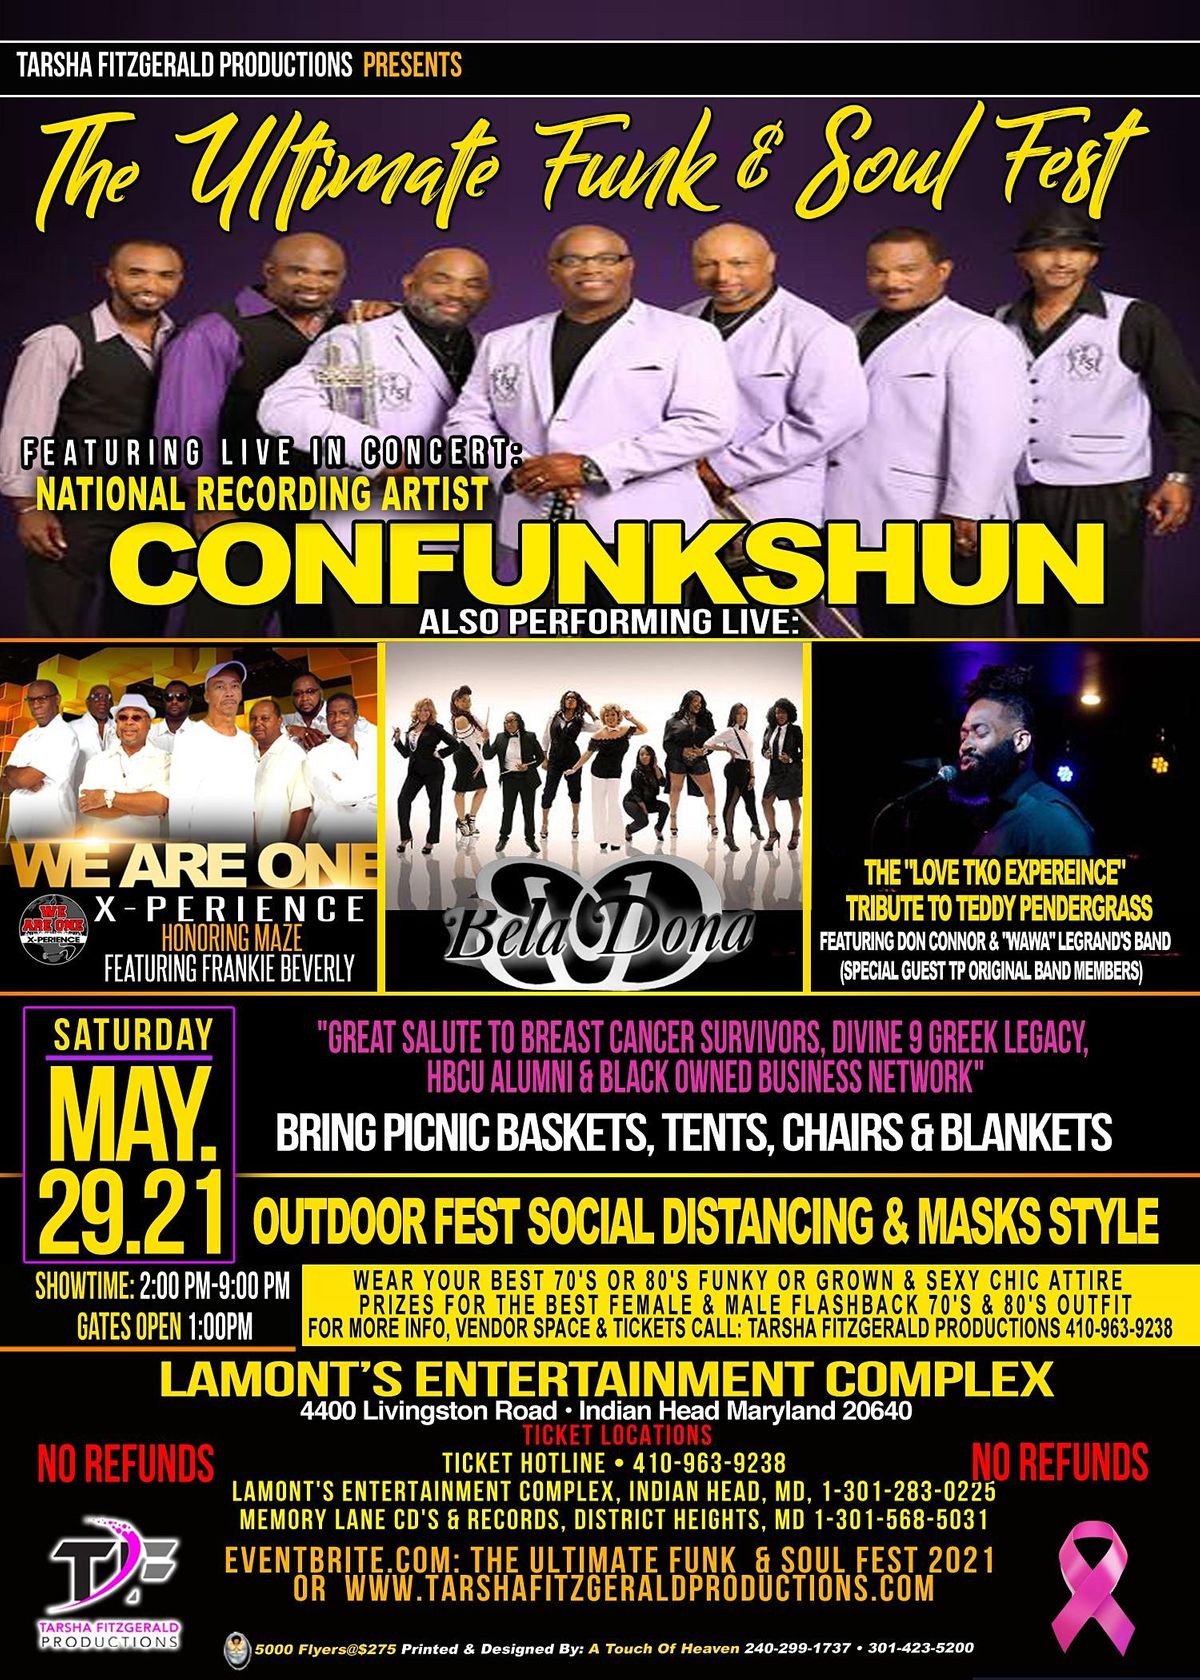 The Ultimate Funk & Soul Fest, Lamont's Entertainment Complex, Indian